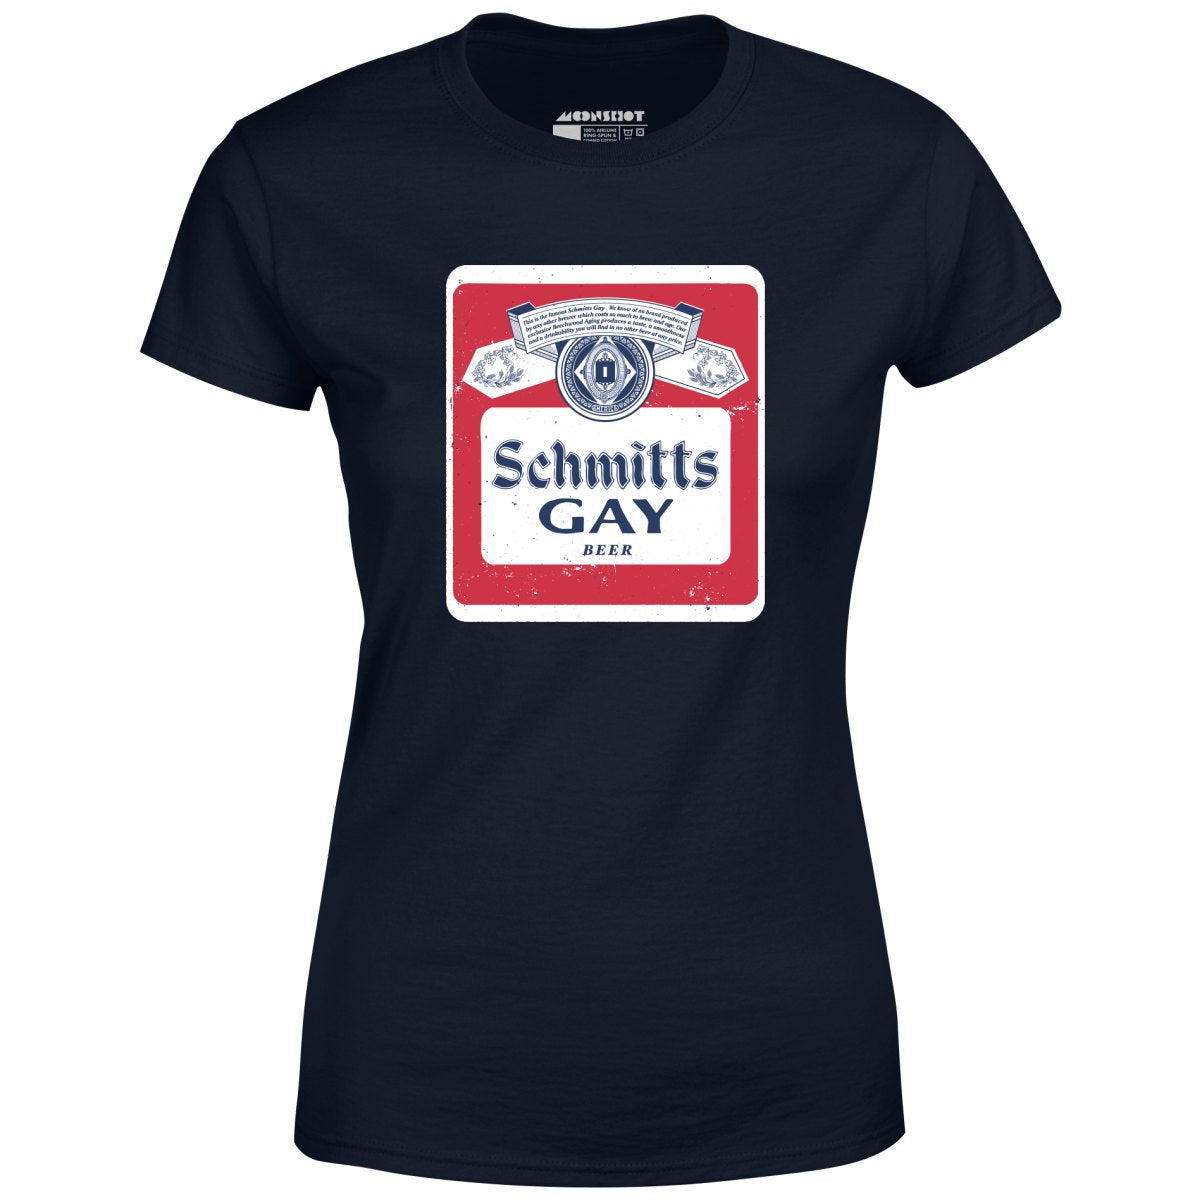 Schmitts Gay Beer - Women's T-Shirt